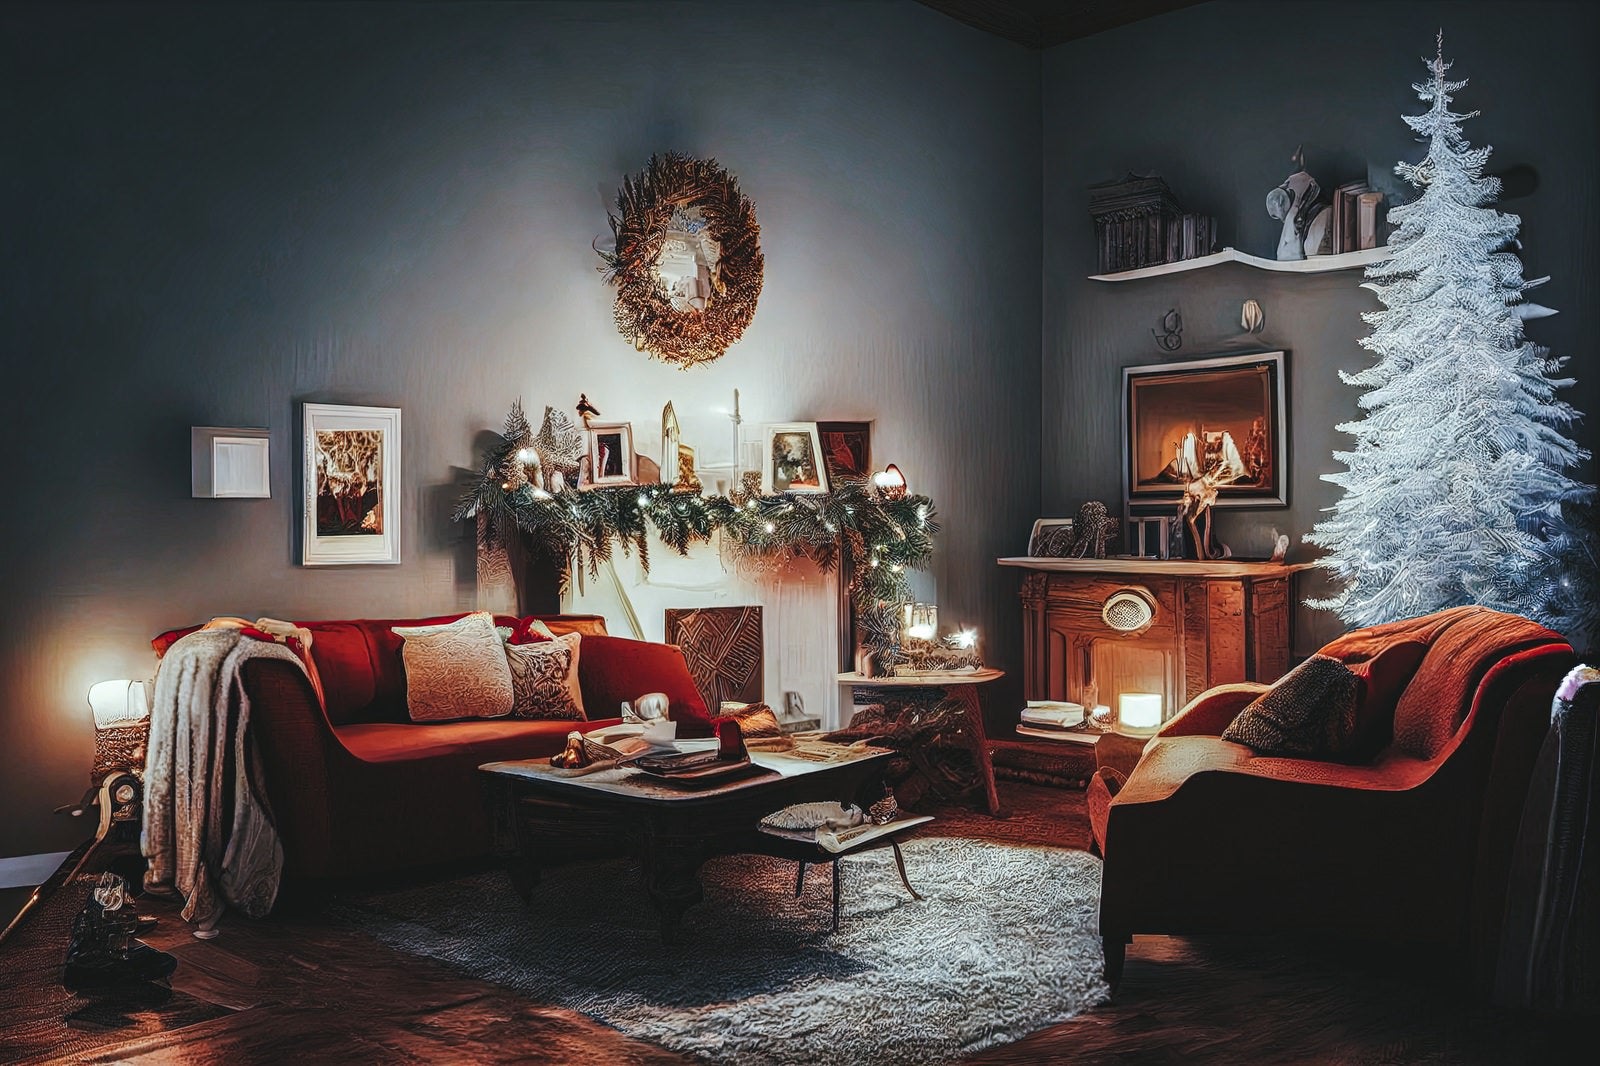 「暖炉のあるクリスマス部屋」の写真